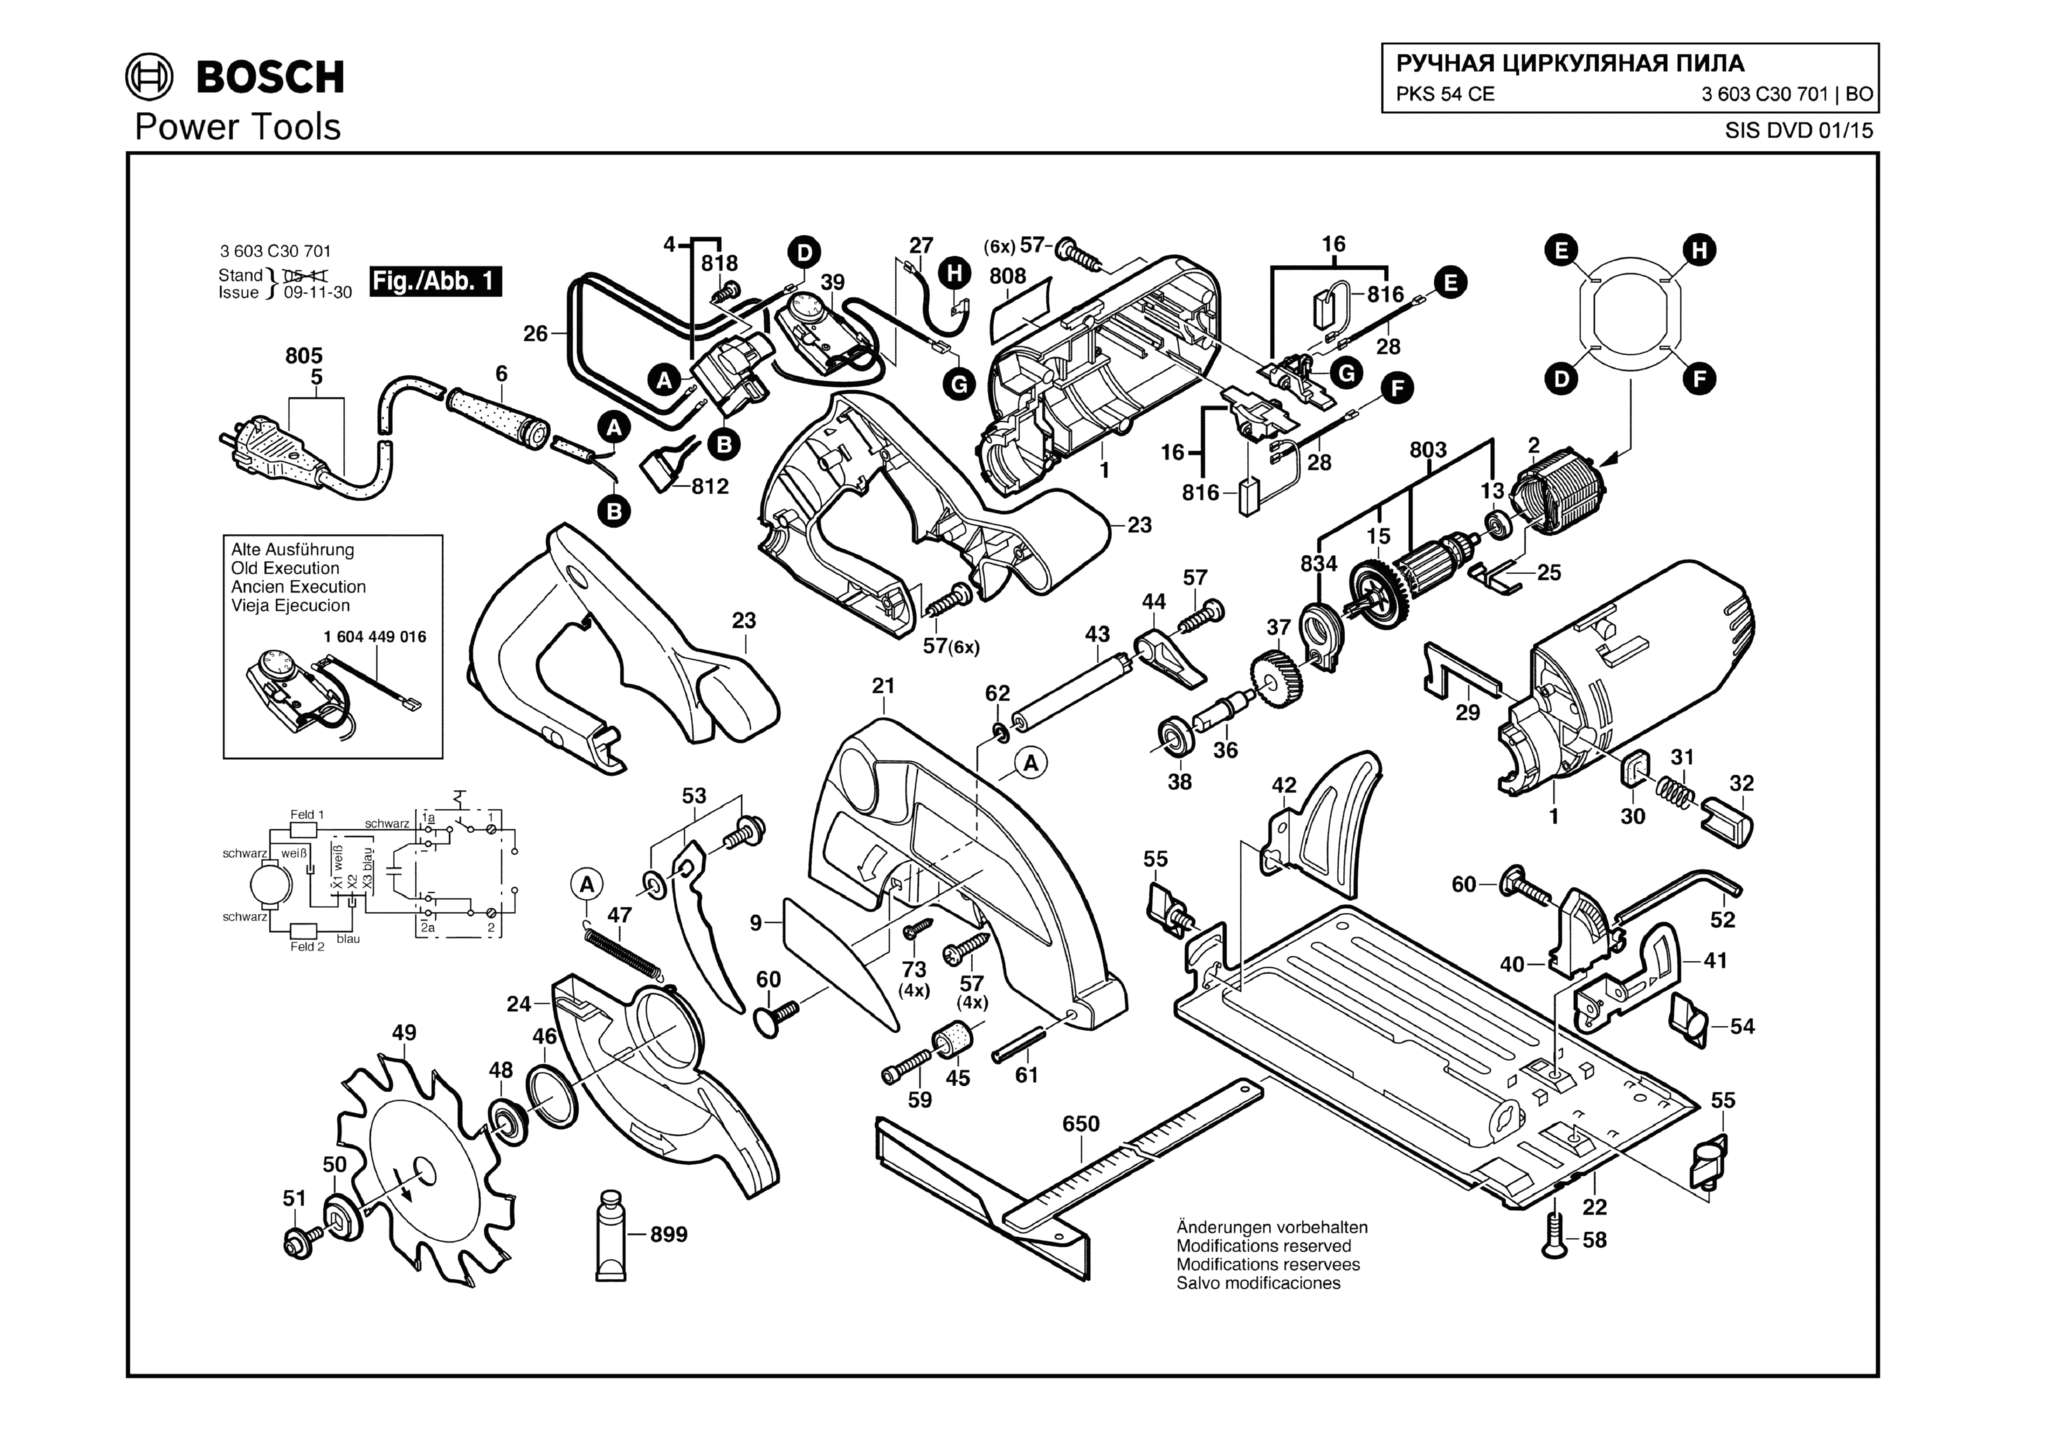 Запчасти, схема и деталировка Bosch PKS 54 CE (ТИП 3603C30701)